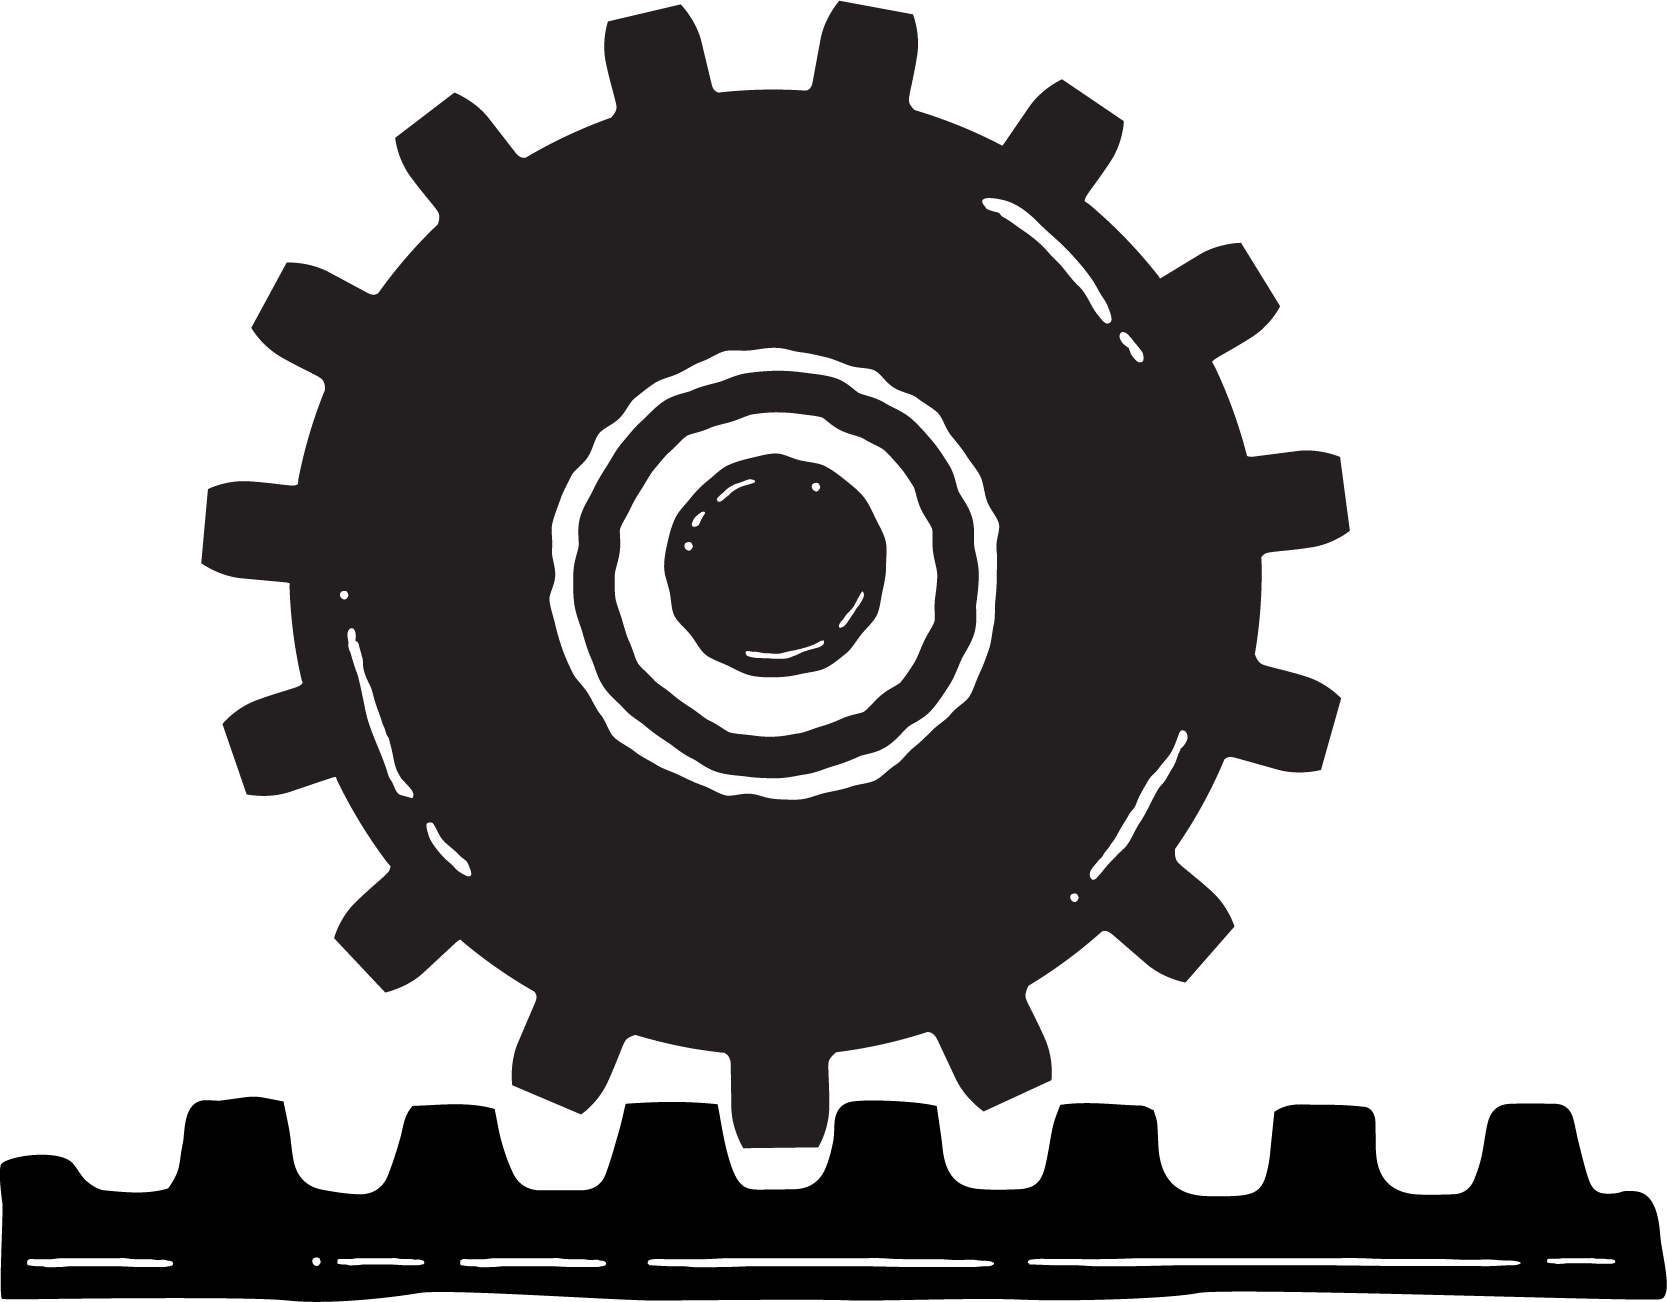 A wheel icon